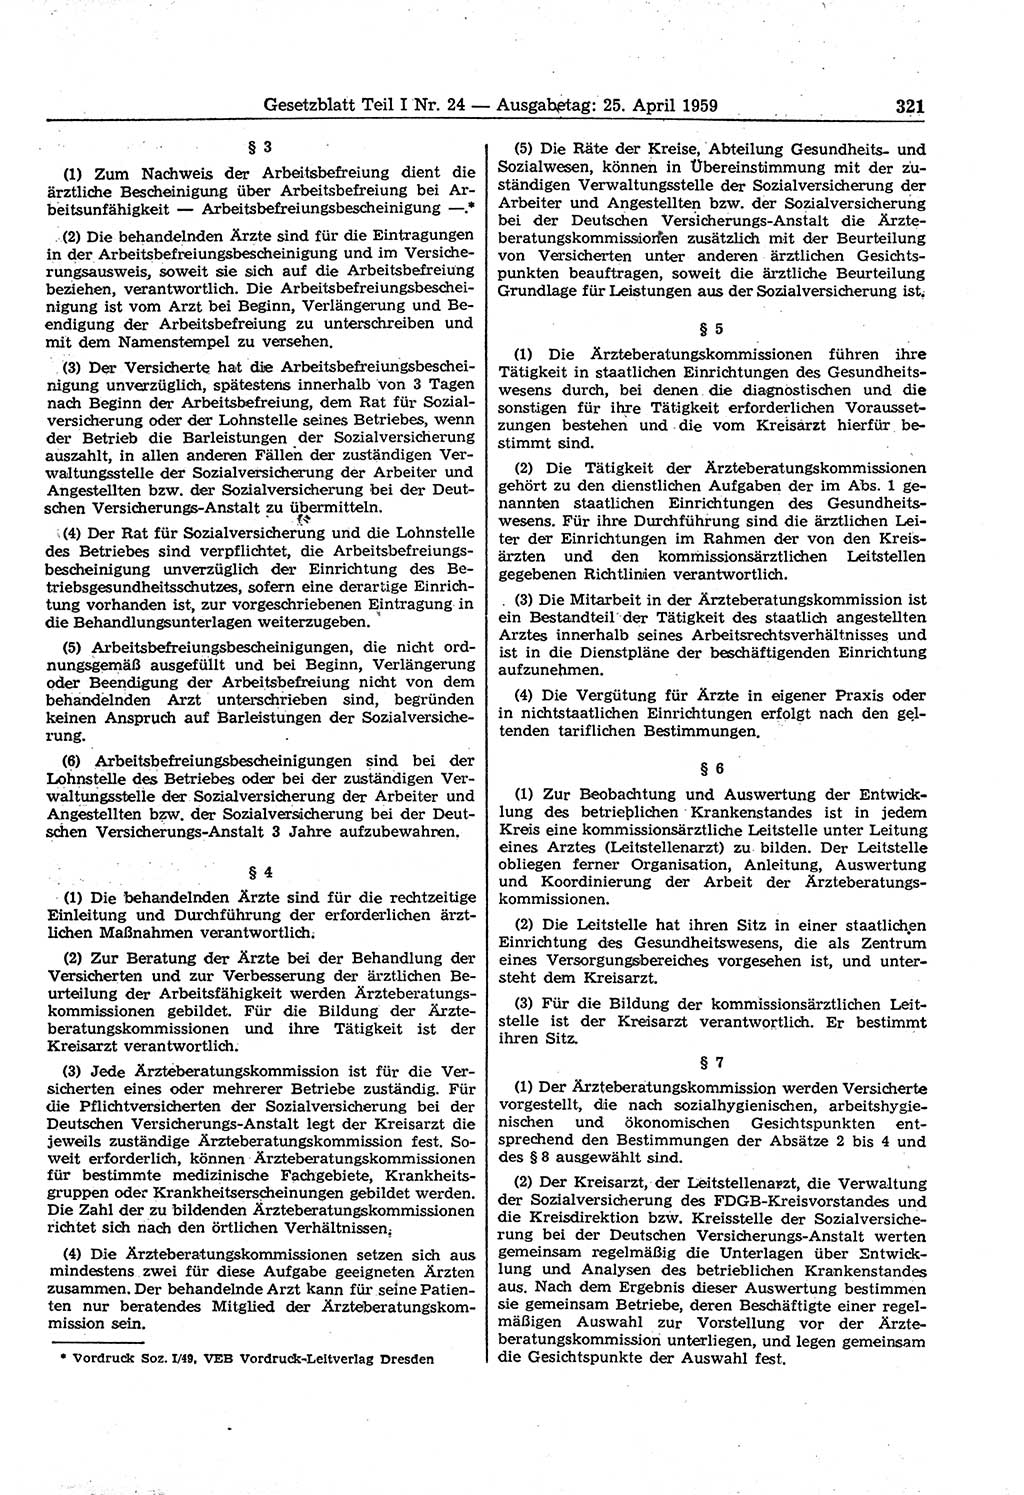 Gesetzblatt (GBl.) der Deutschen Demokratischen Republik (DDR) Teil Ⅰ 1959, Seite 321 (GBl. DDR Ⅰ 1959, S. 321)